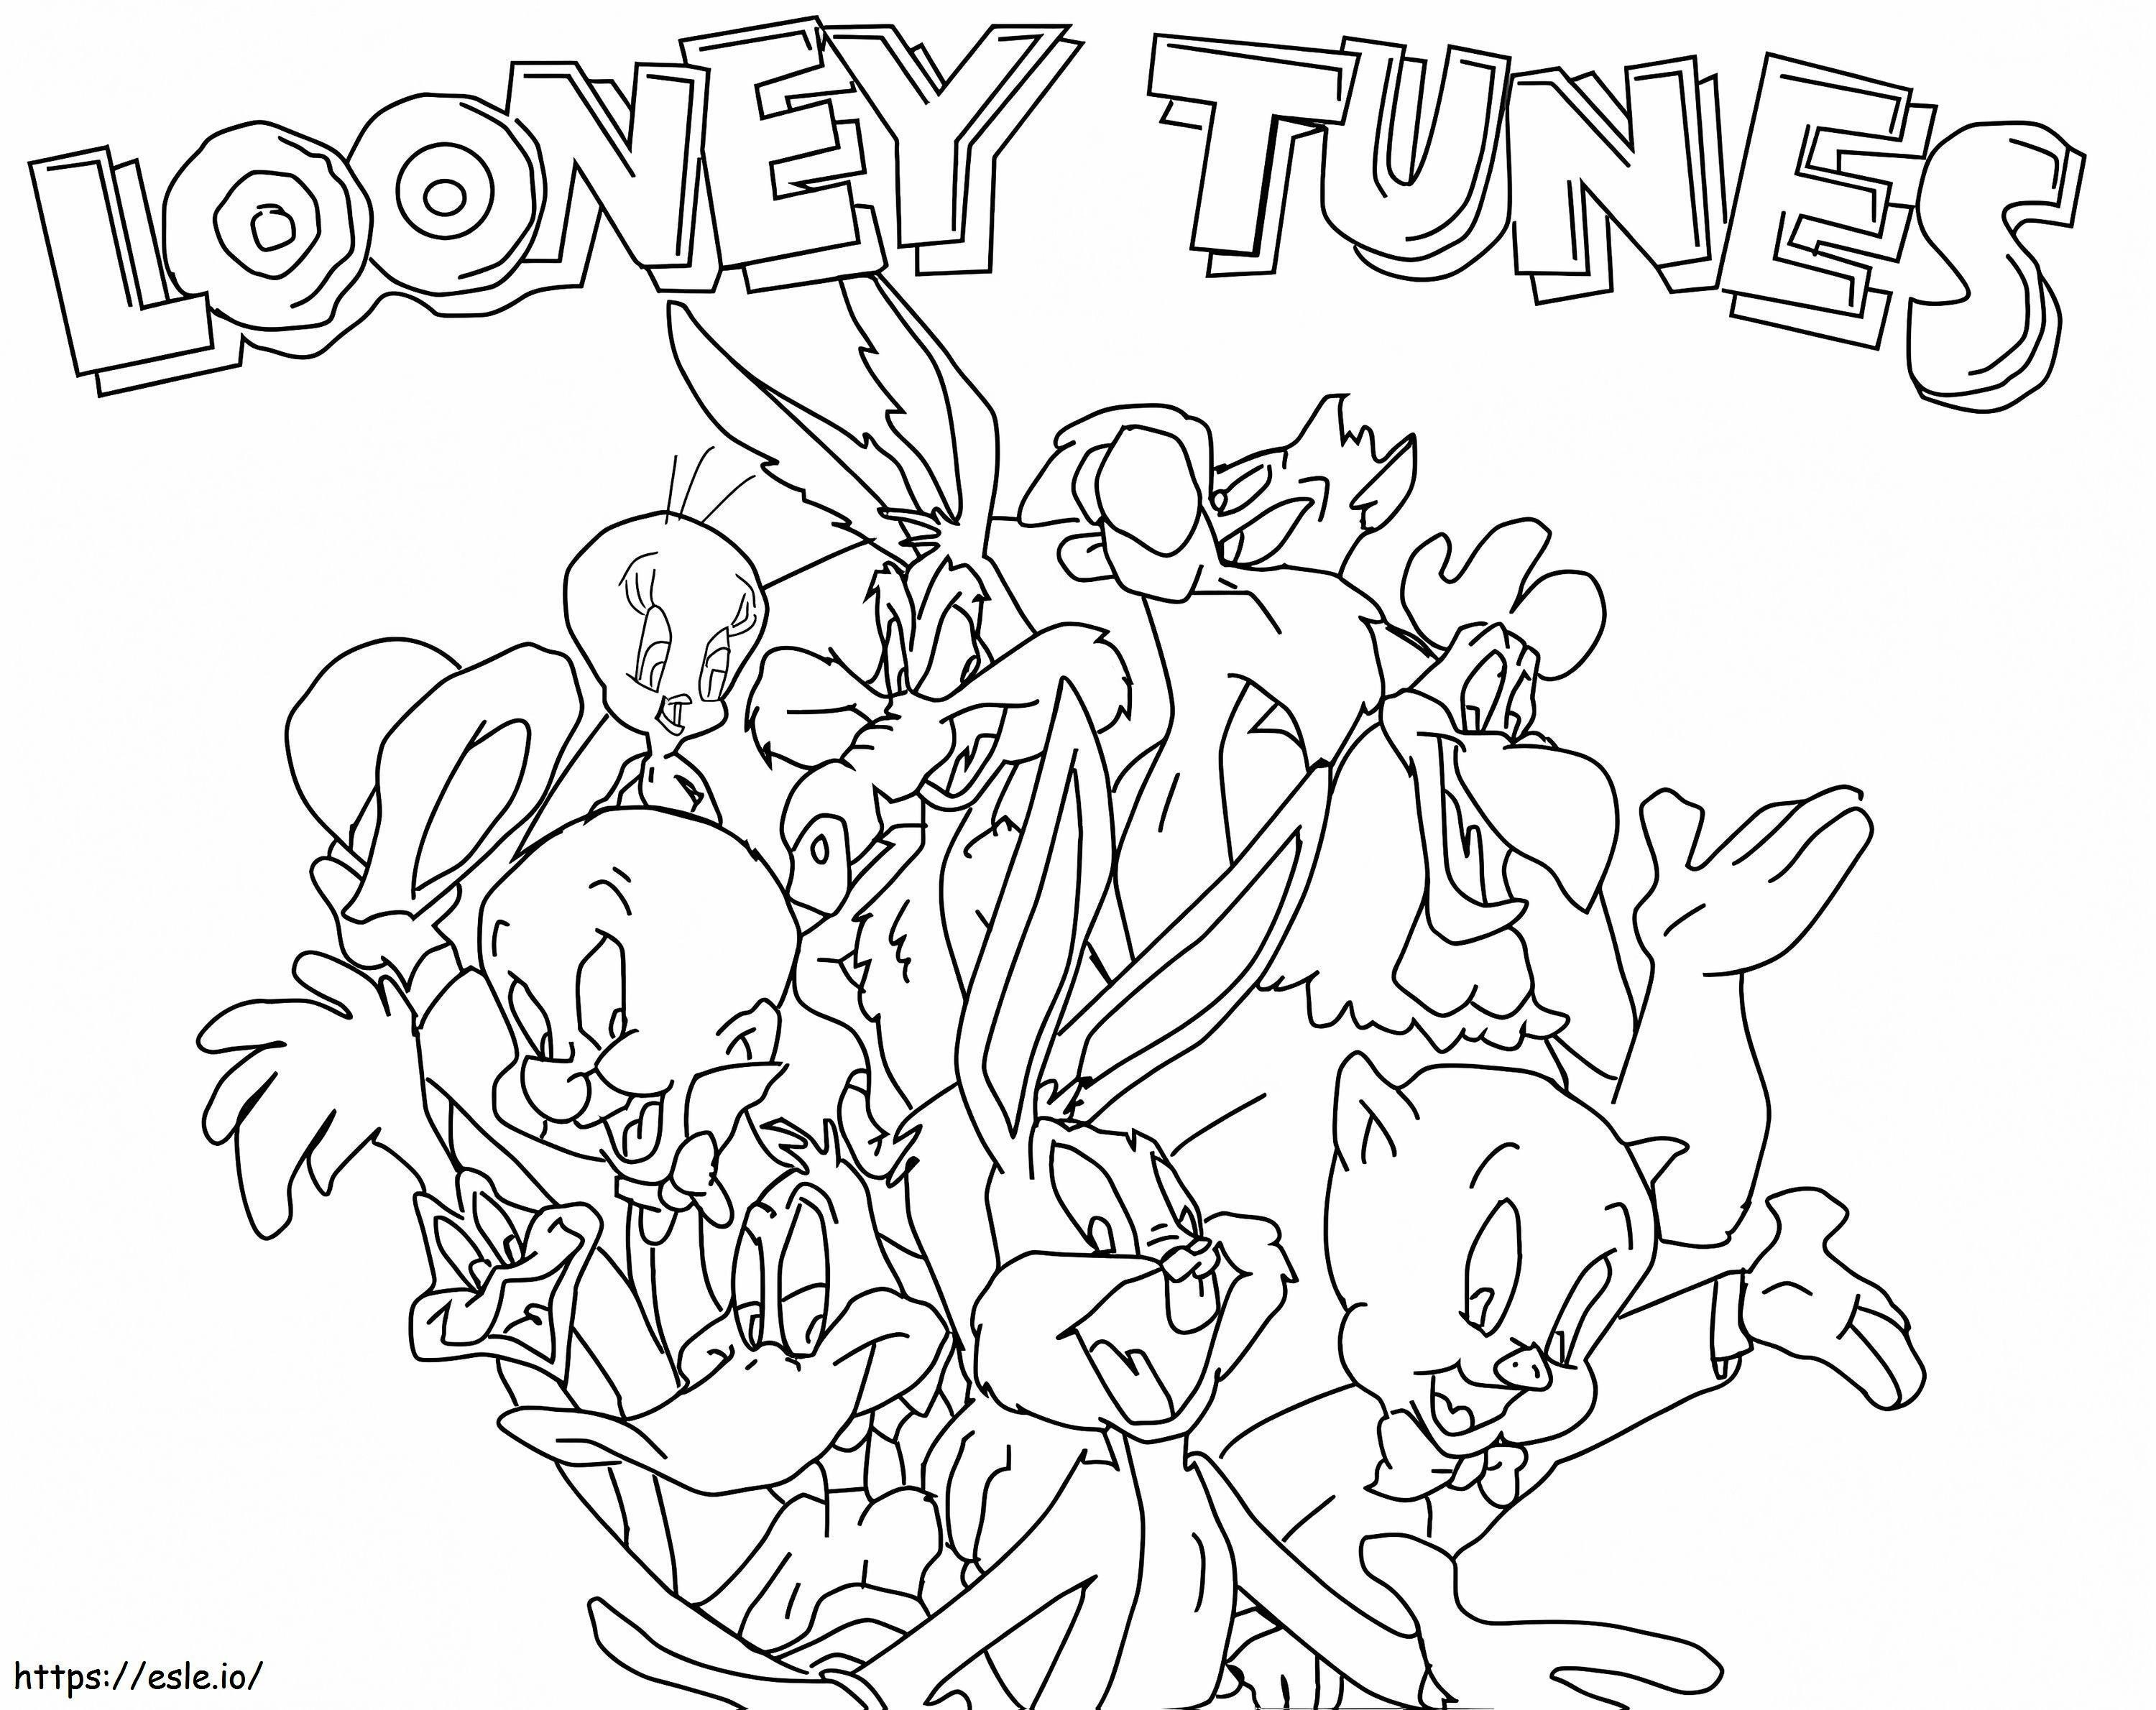 Looney tunes de colorat